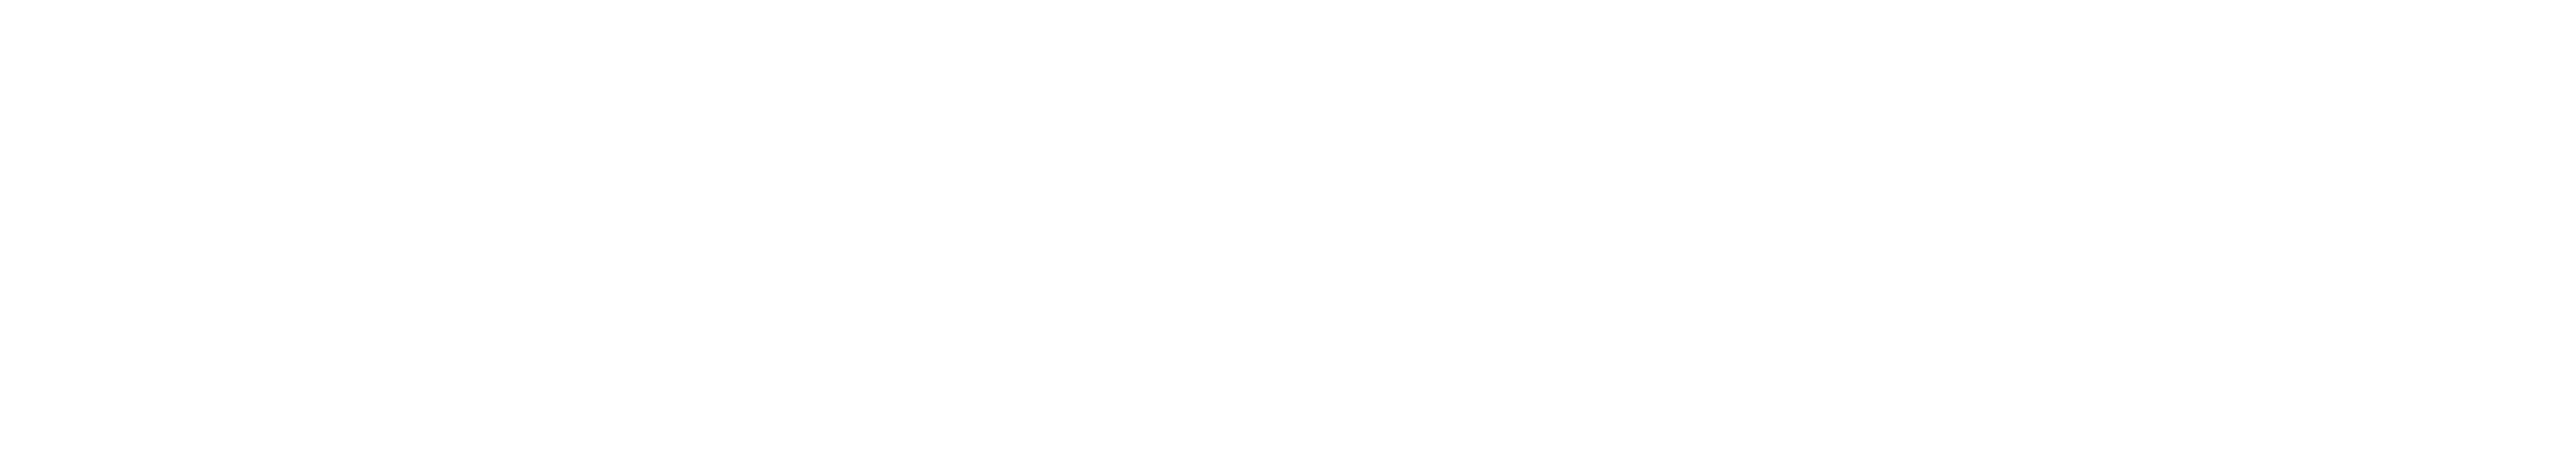 MACStack Waterproof